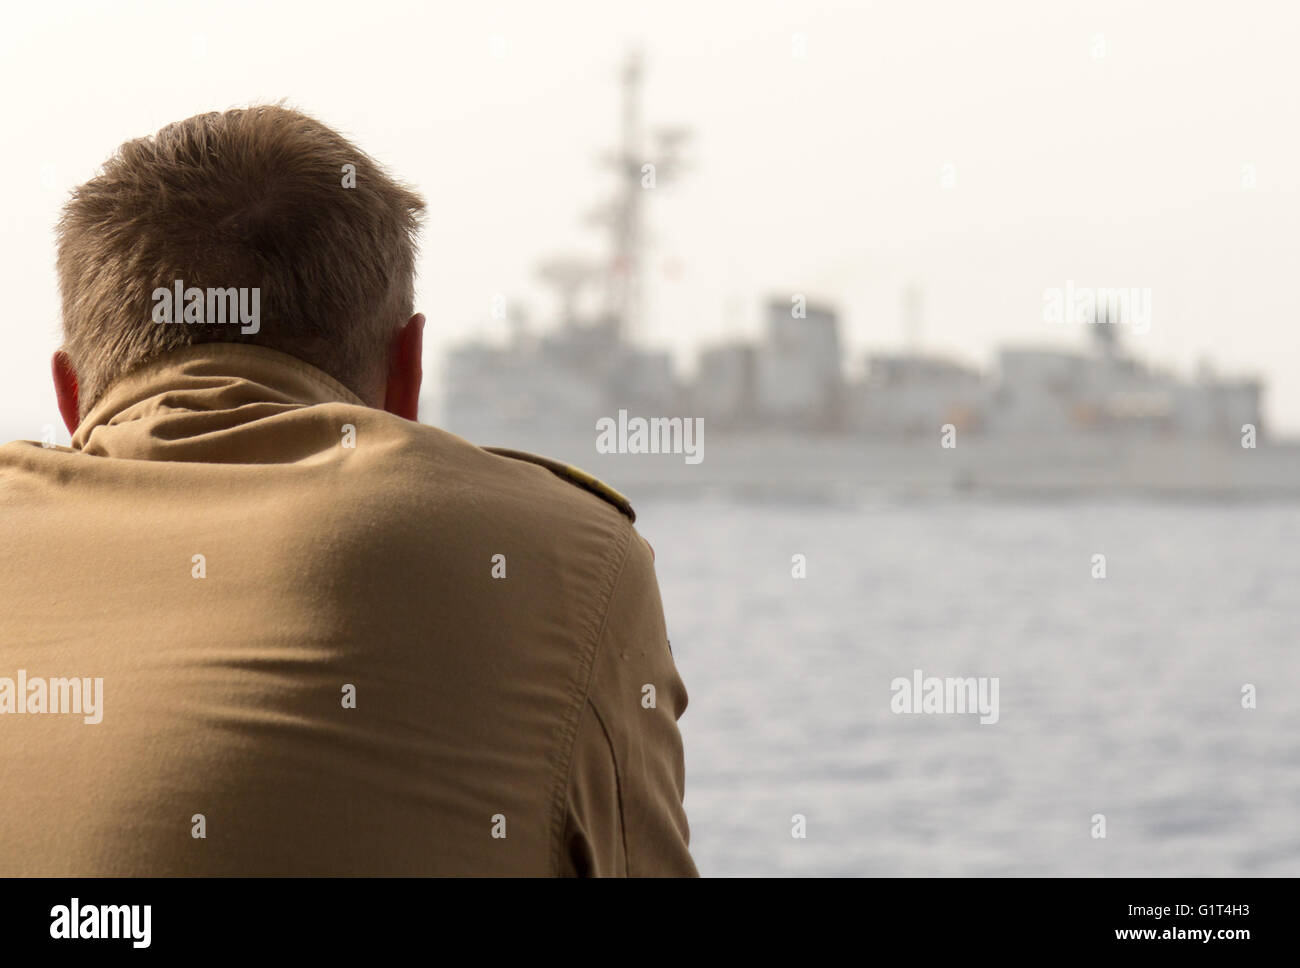 MEDITERRANE Meer / Libanon - NOVEMBER 2015: Deutsche Kriegsschiff Soldat blickt auf ein anderes Kriegsschiff Stockfoto